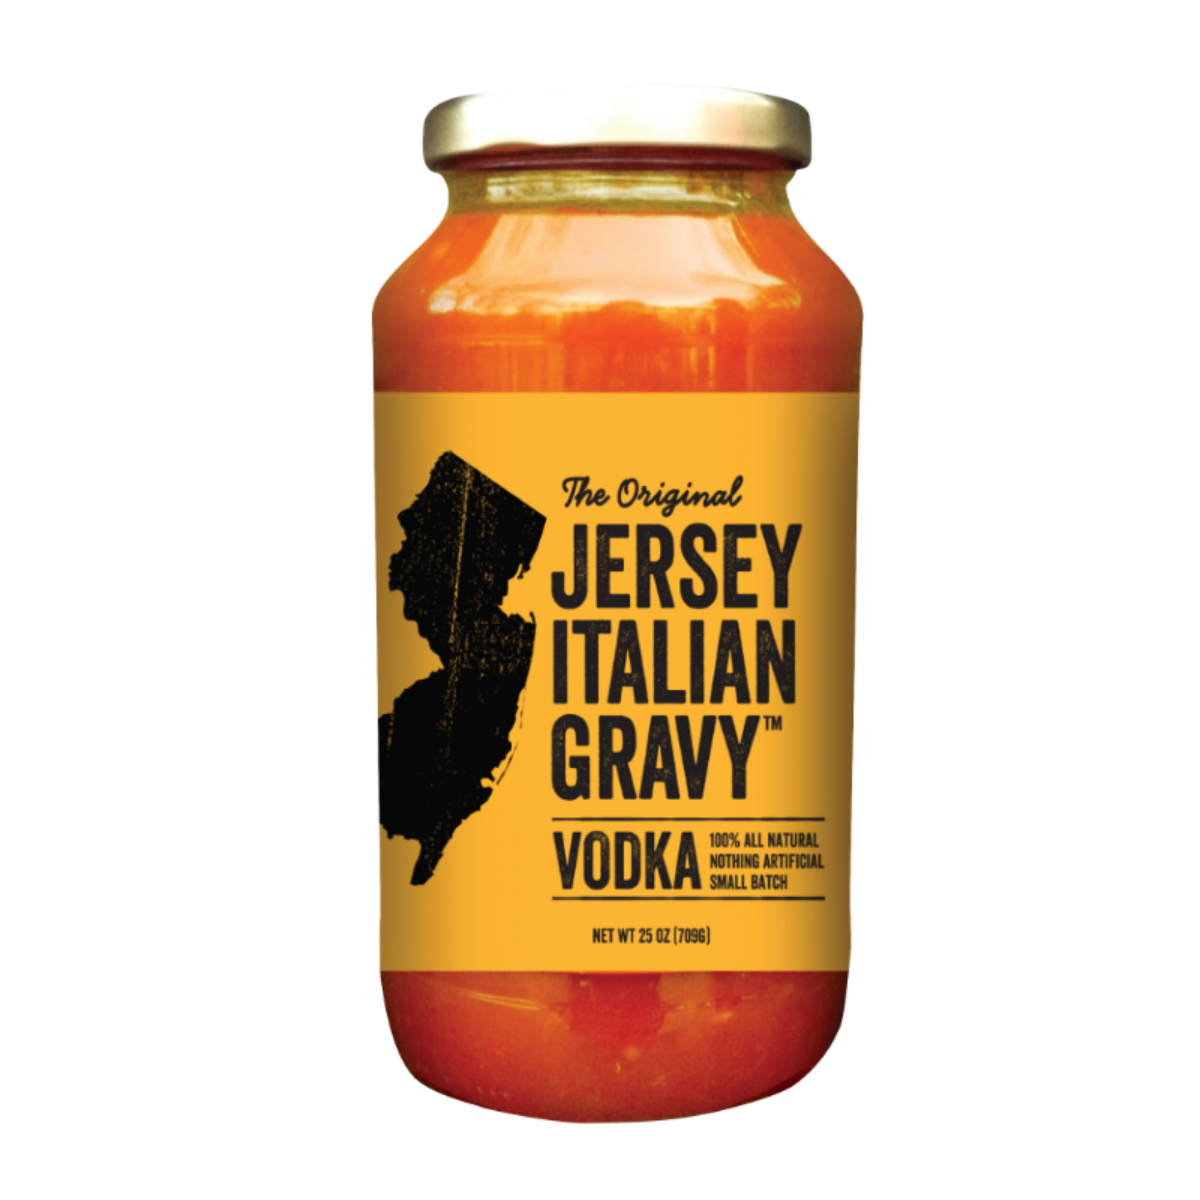 Jersey Italian Gravy Vodka Sauce (Pasta Sauce)